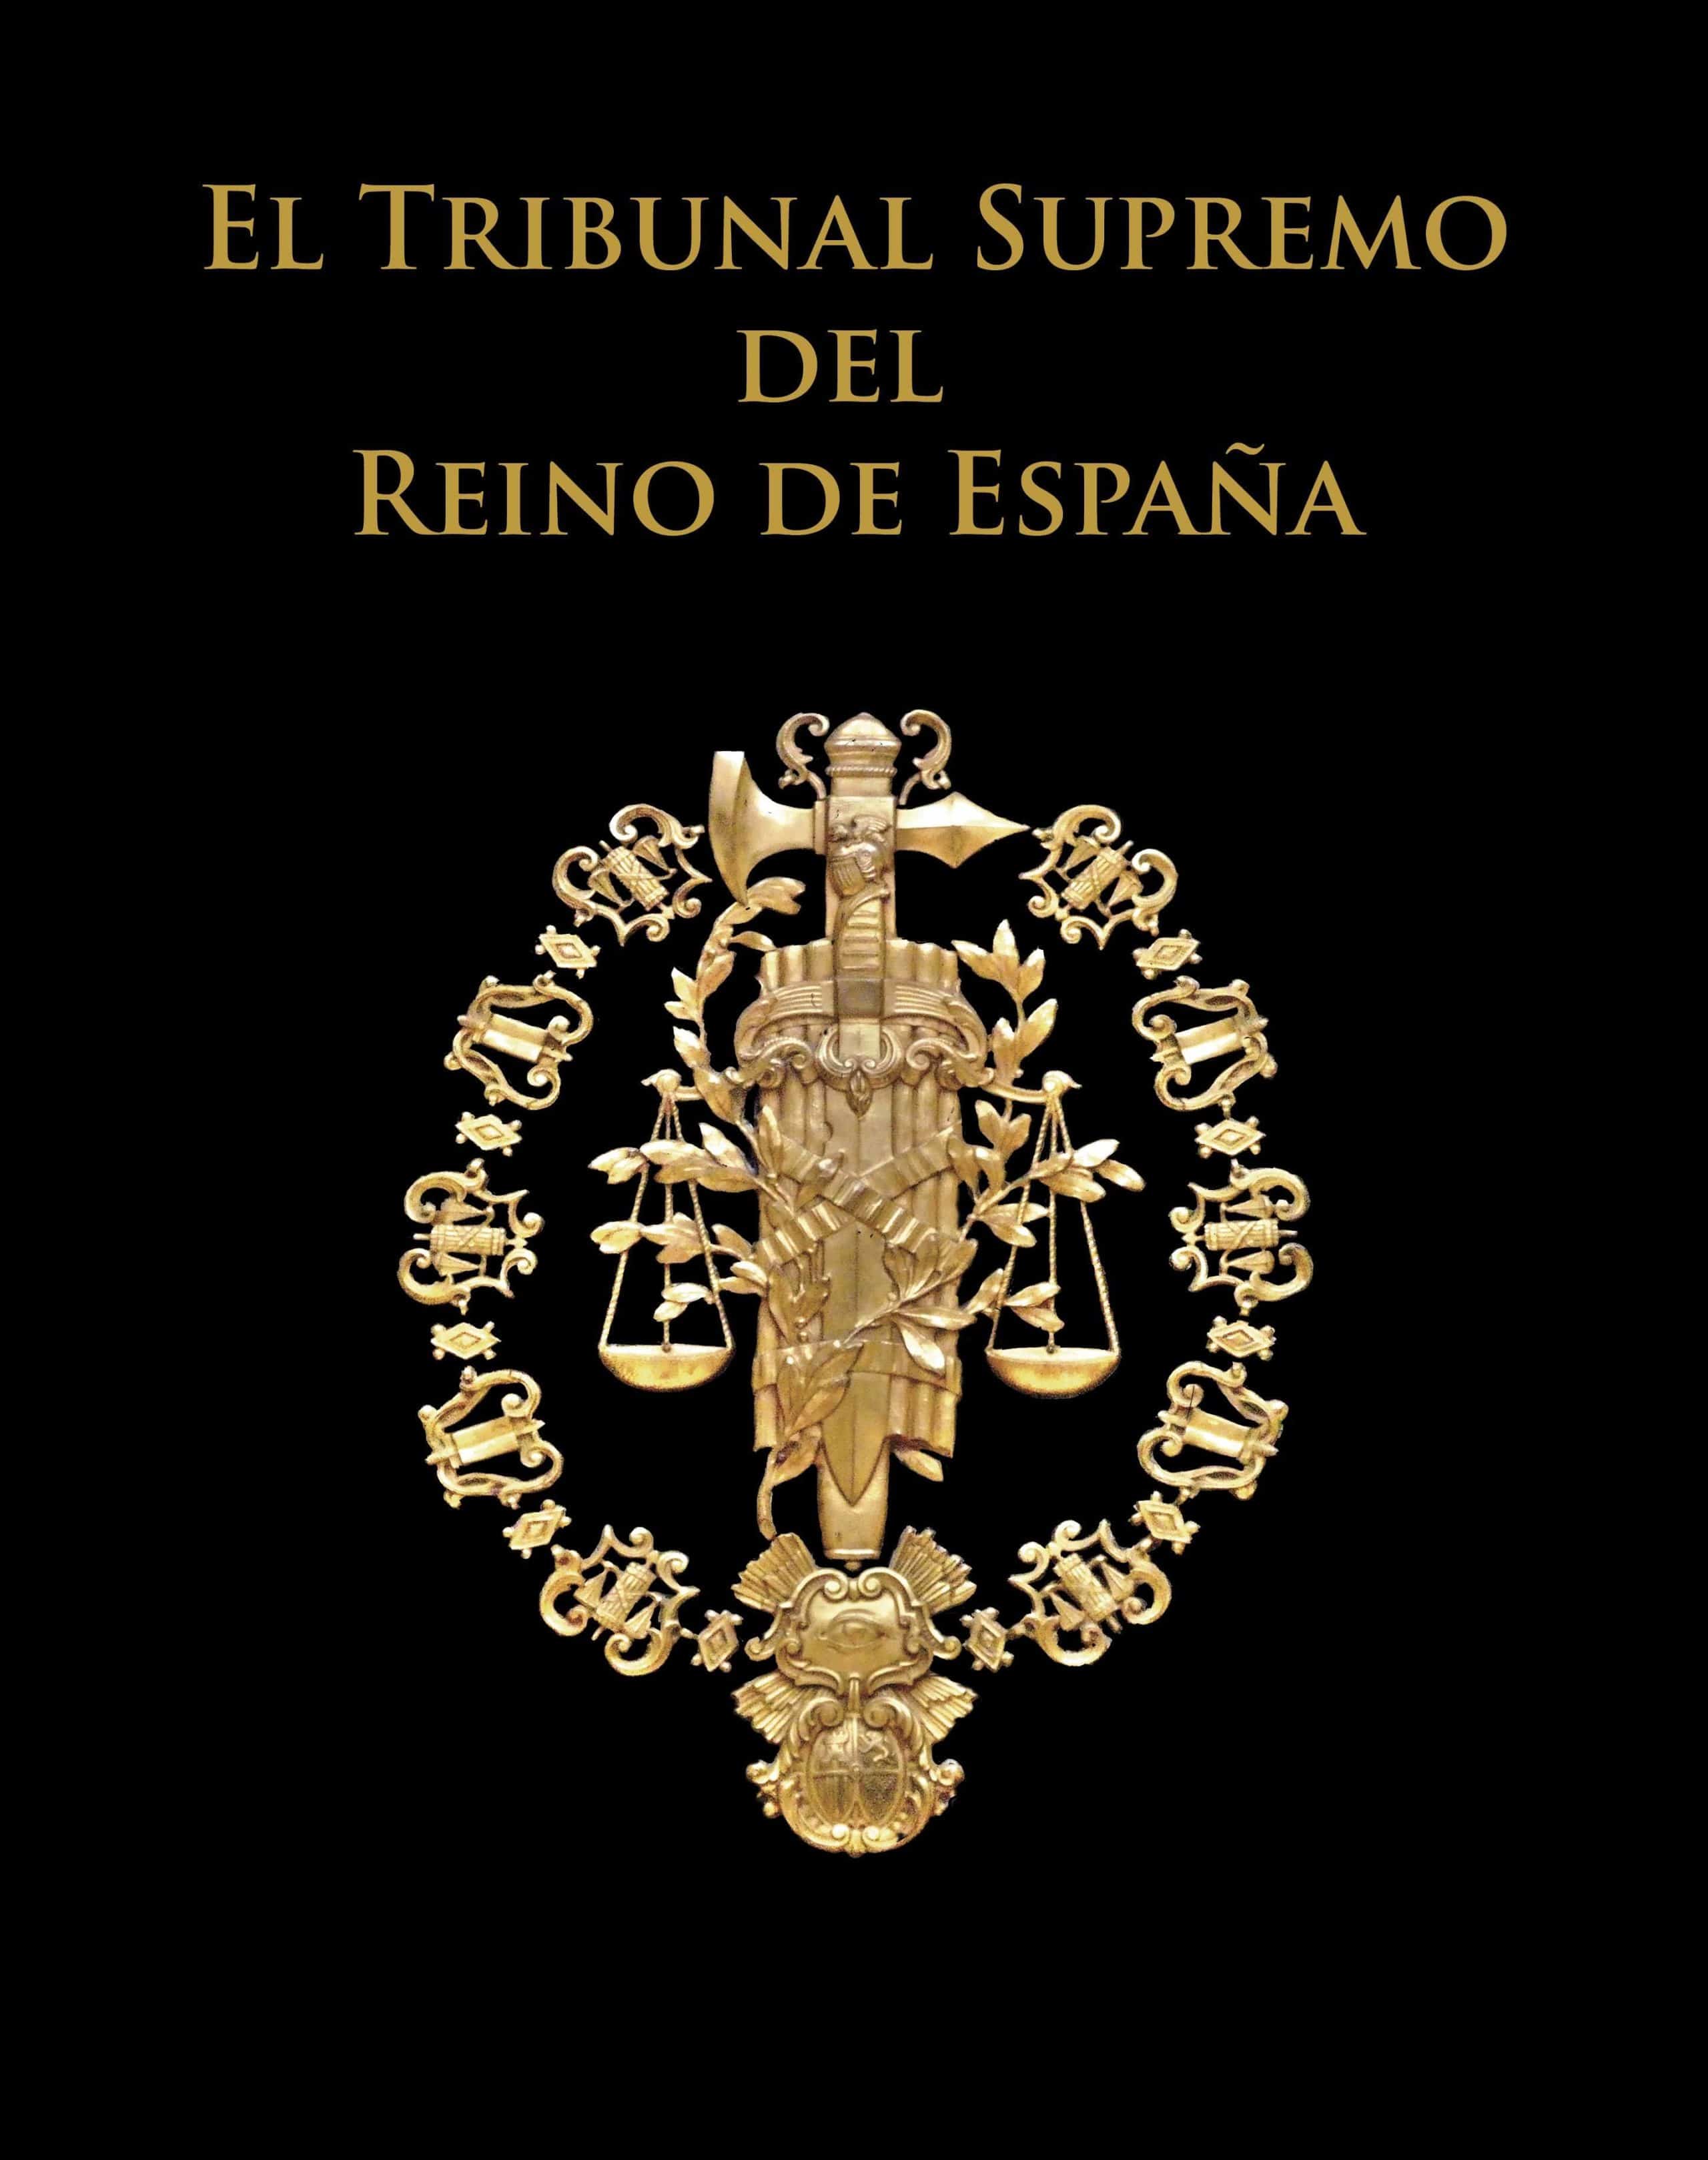 El ojo que todo lo ve en el escudo del Tribunal Supremo de España, tal como figura en la portada del libro oficial del alto tribunal.